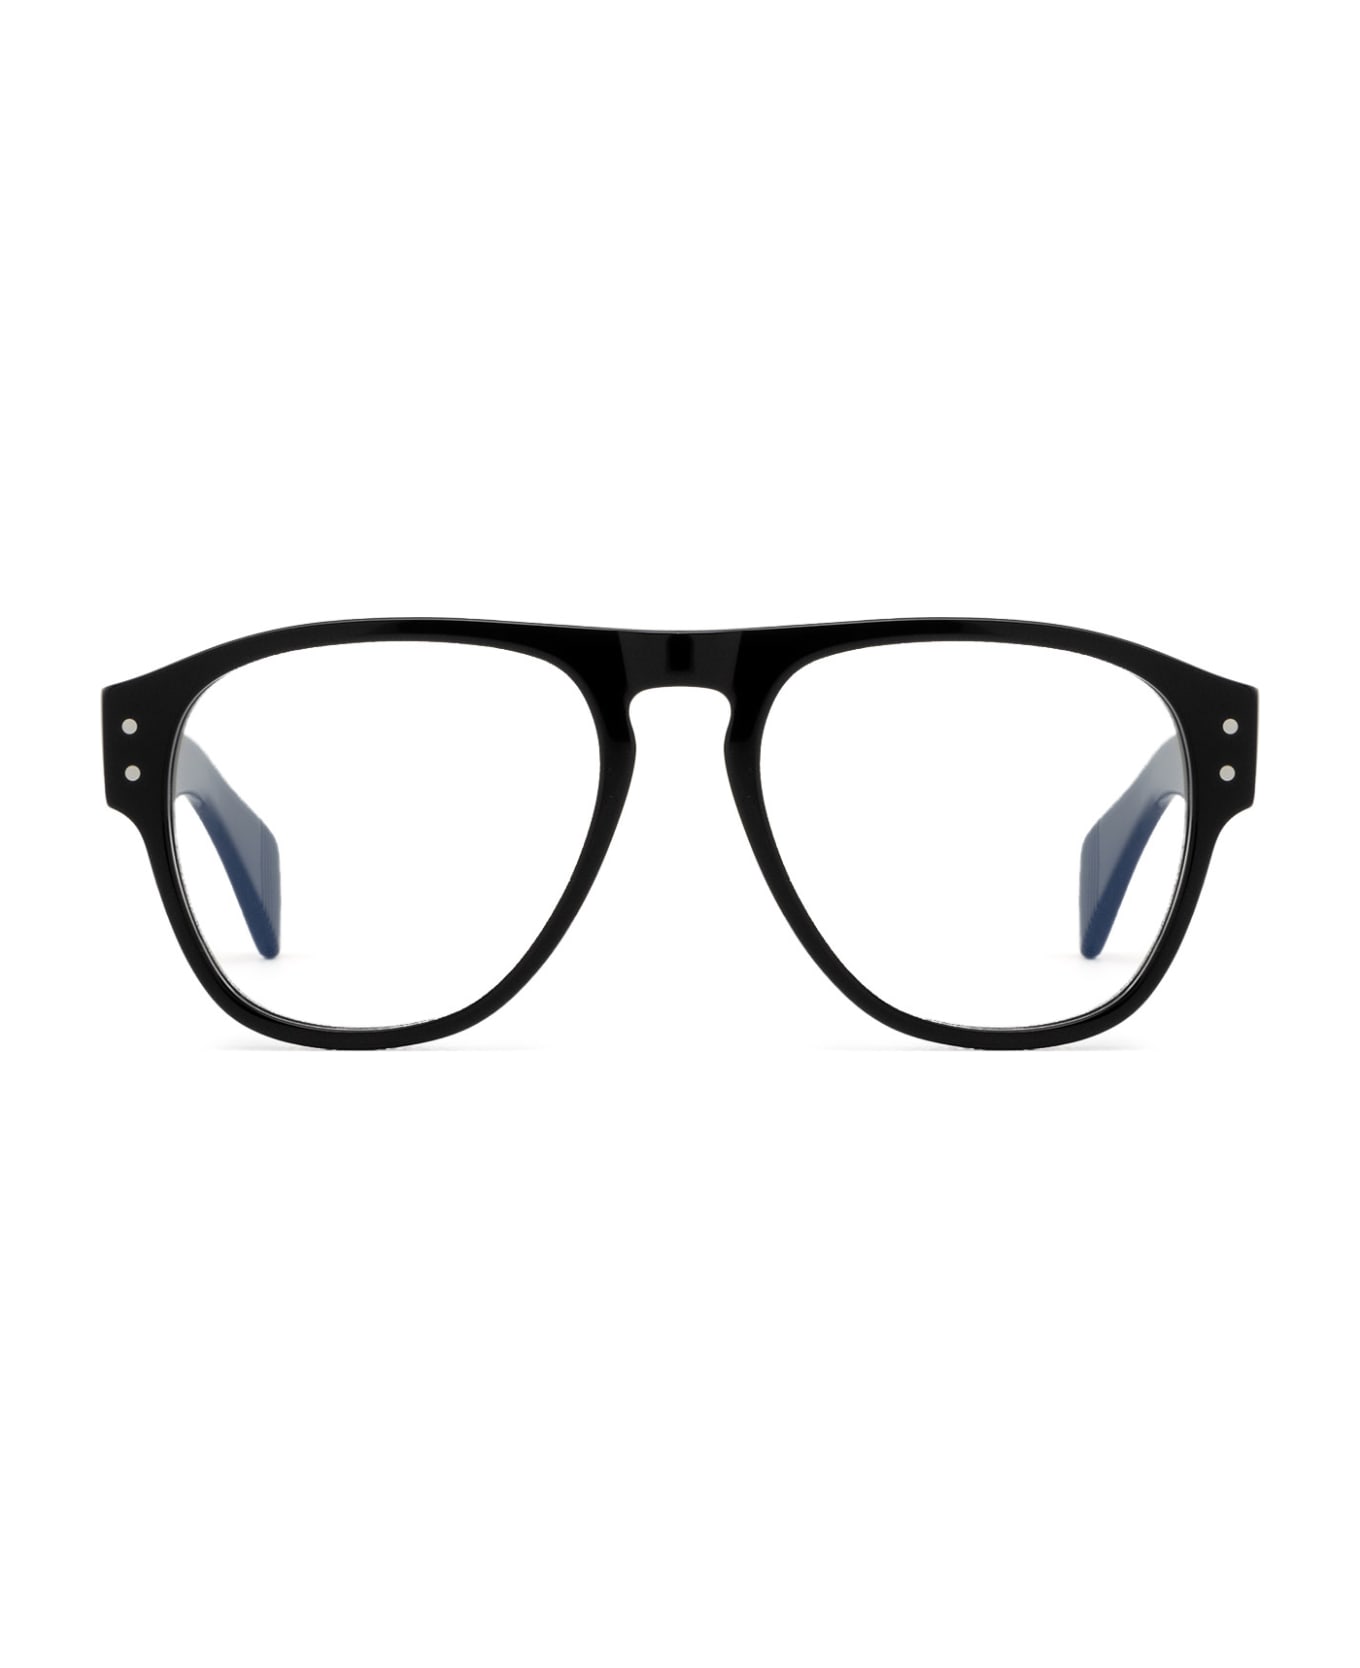 Cubitts Merlin Black Glasses - Black アイウェア